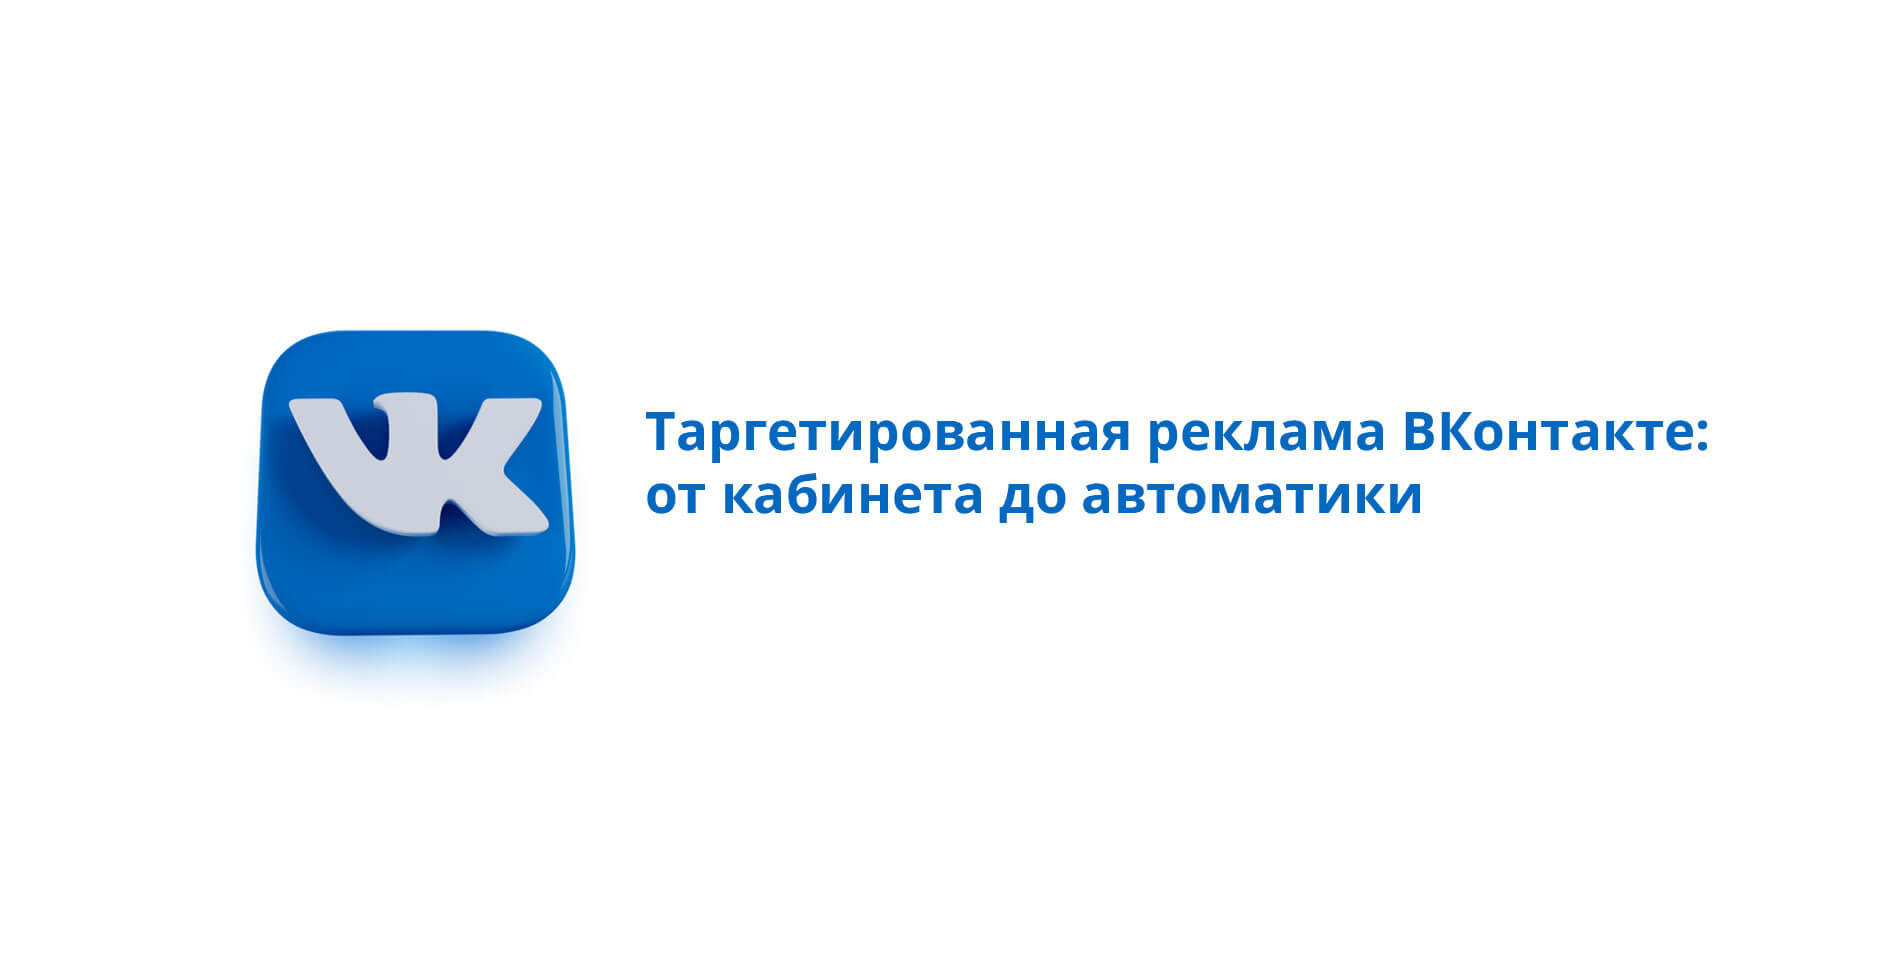 6) Udemy — Таргетированная реклама ВКонтакте: от кабинета до автоматики